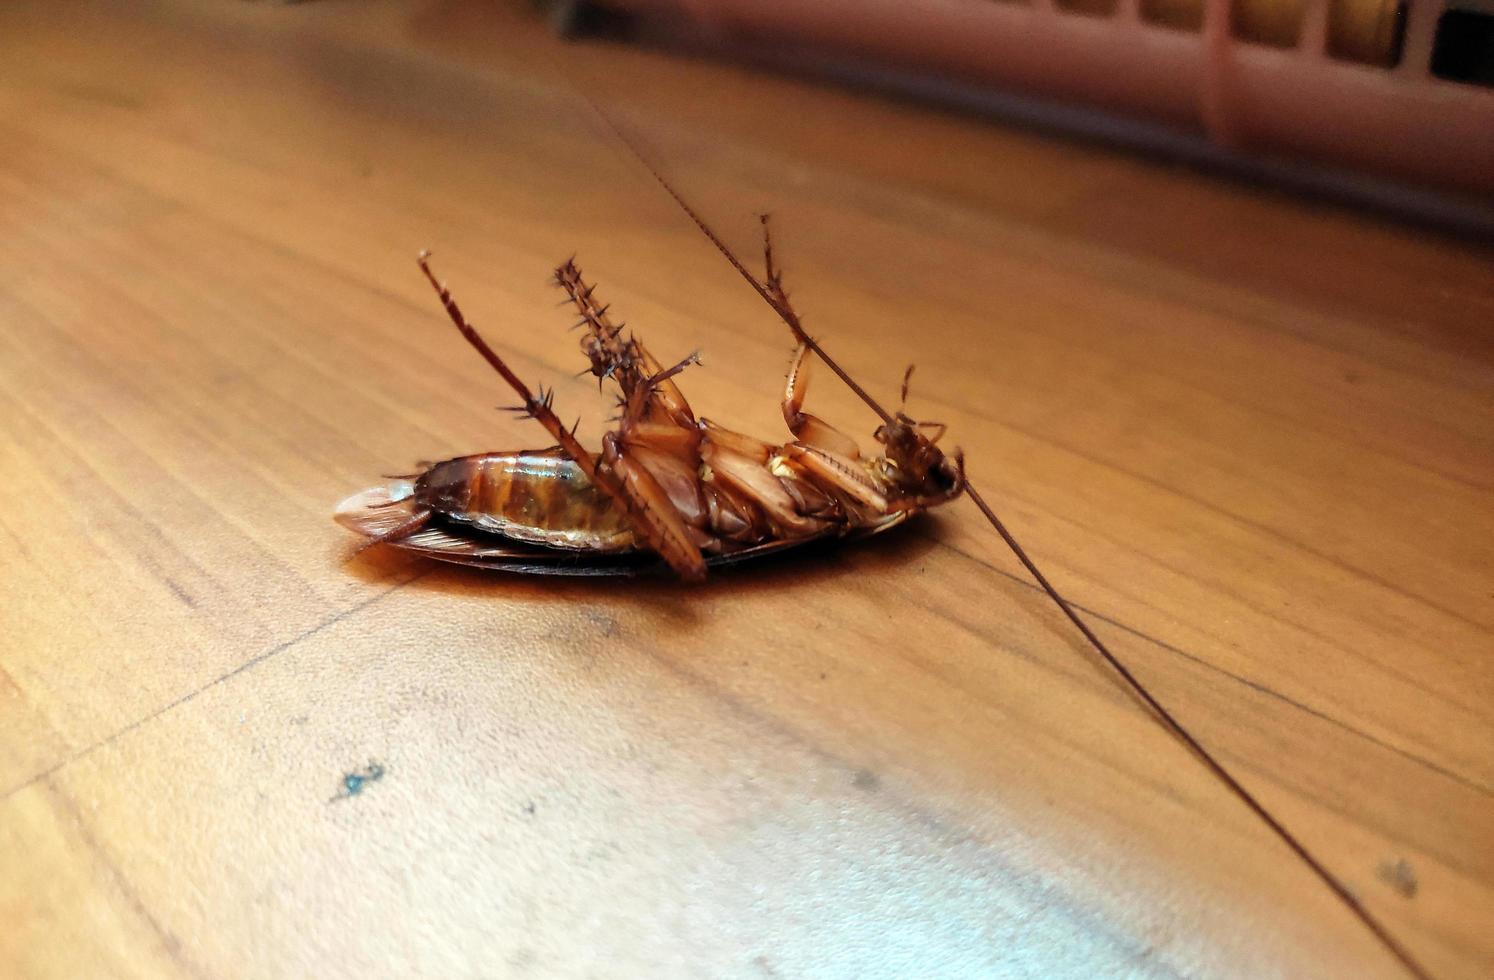 morto scarafaggi su il pavimento. foto